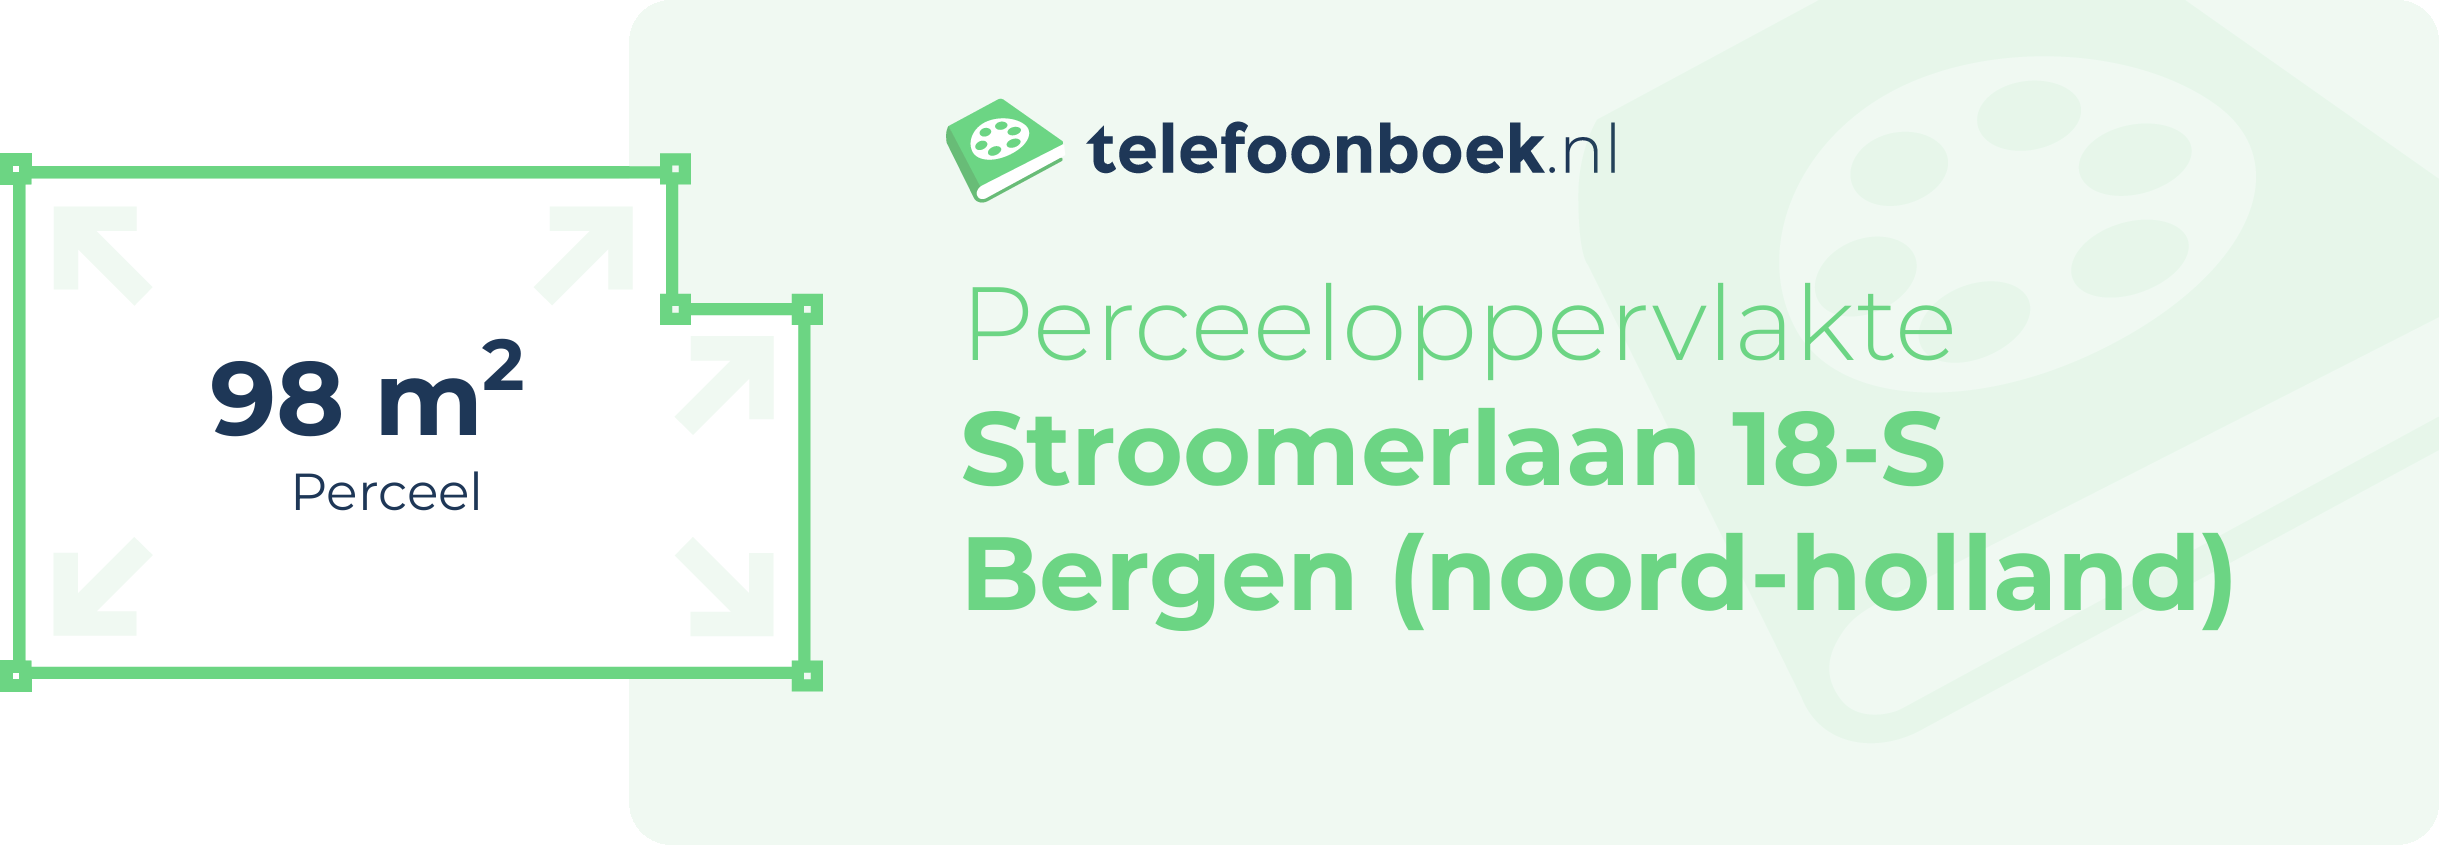 Perceeloppervlakte Stroomerlaan 18-S Bergen (Noord-Holland)